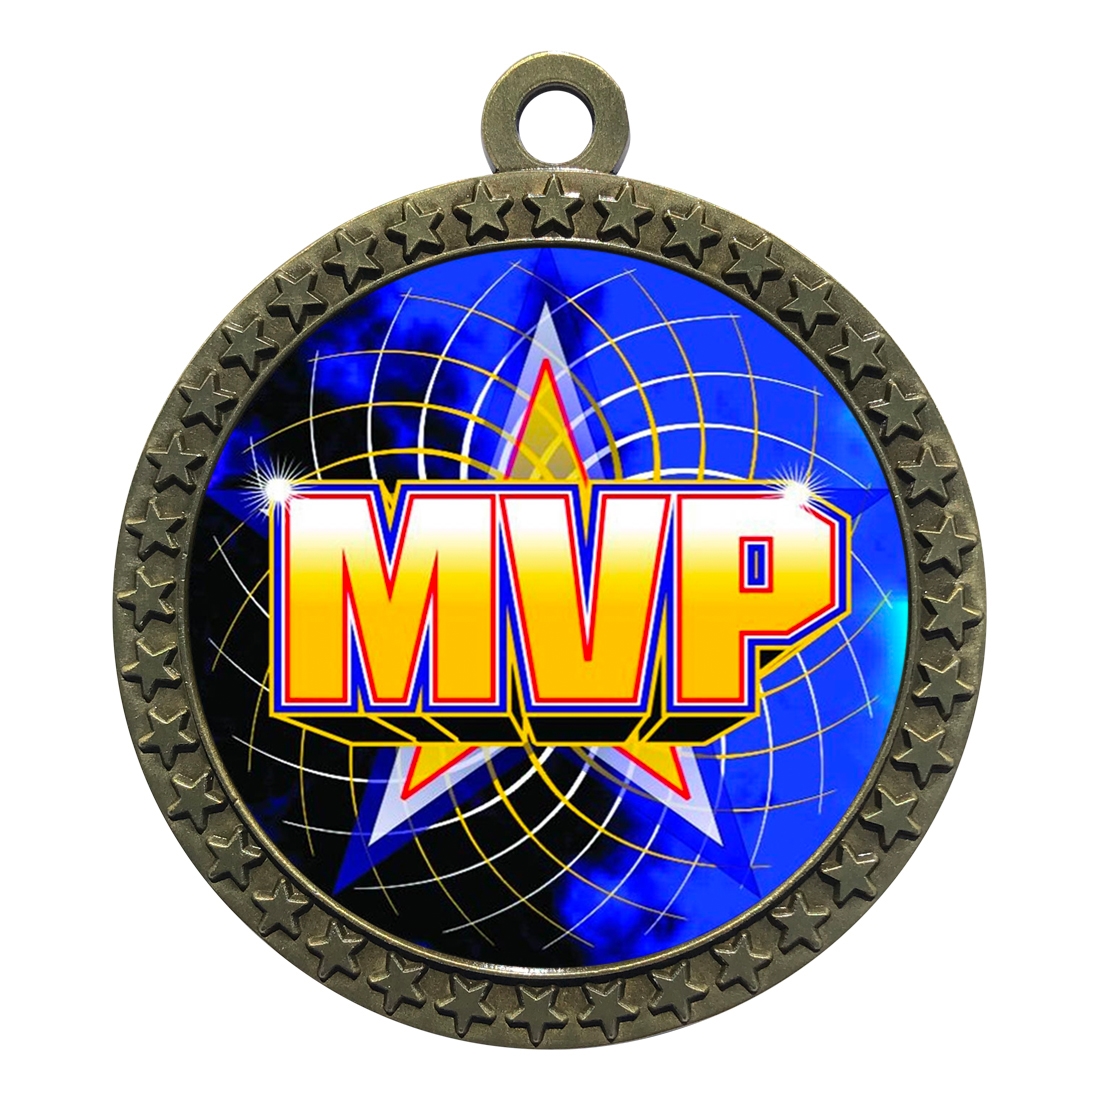 2-1/2" MVP Medal